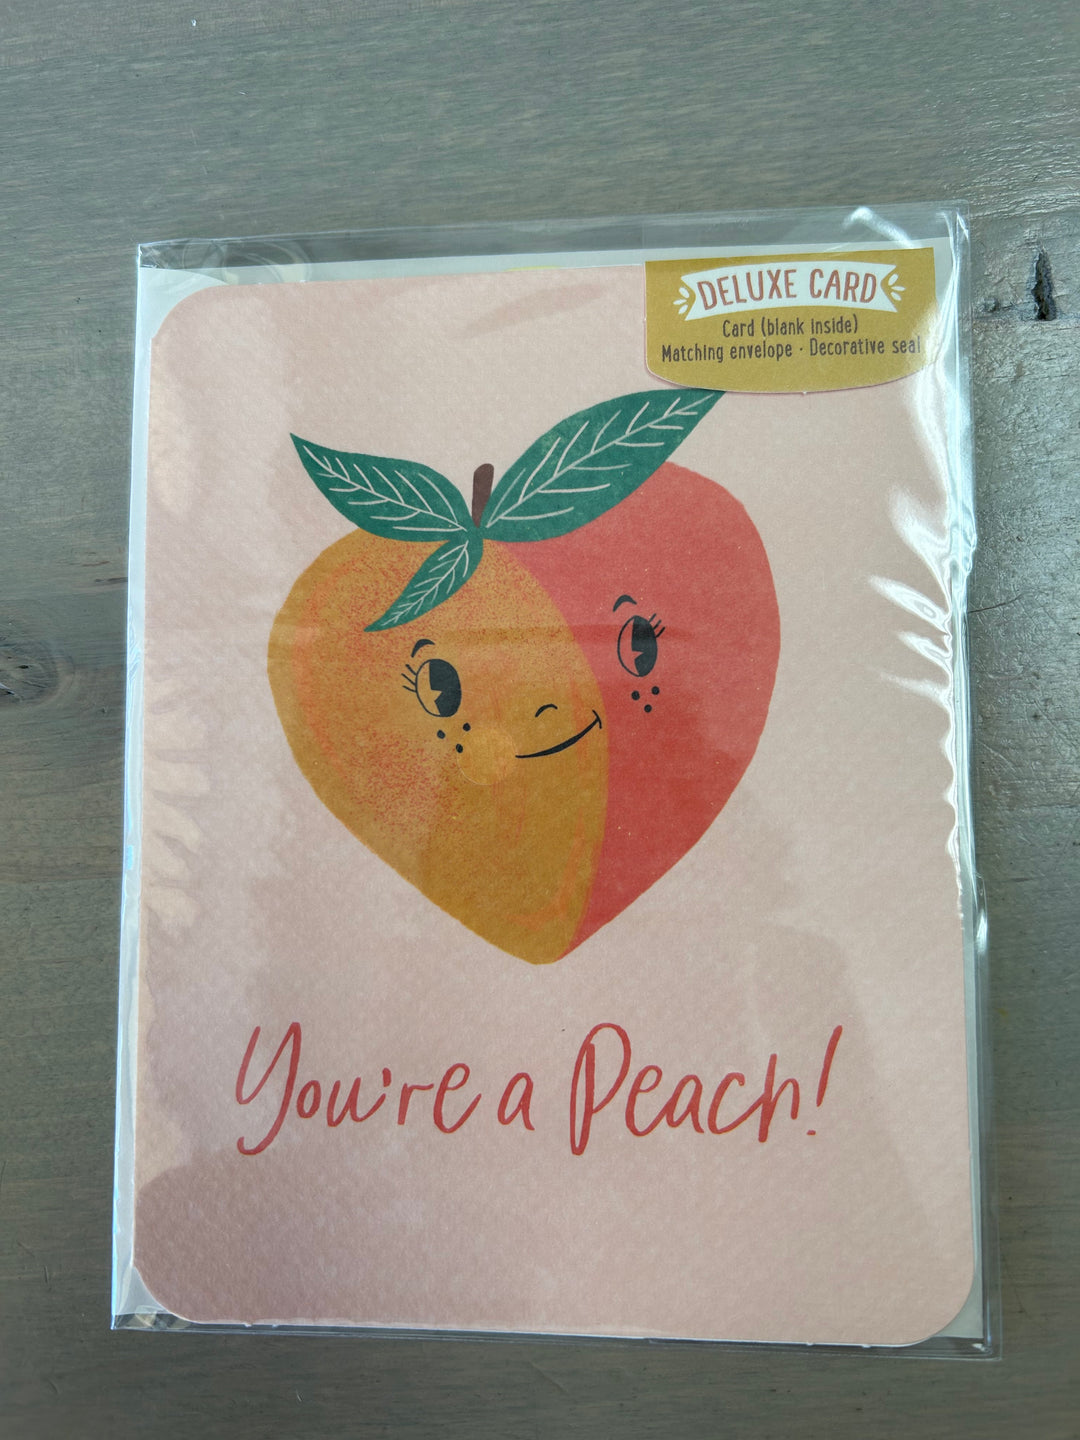 You're A Peach - Greeting Card